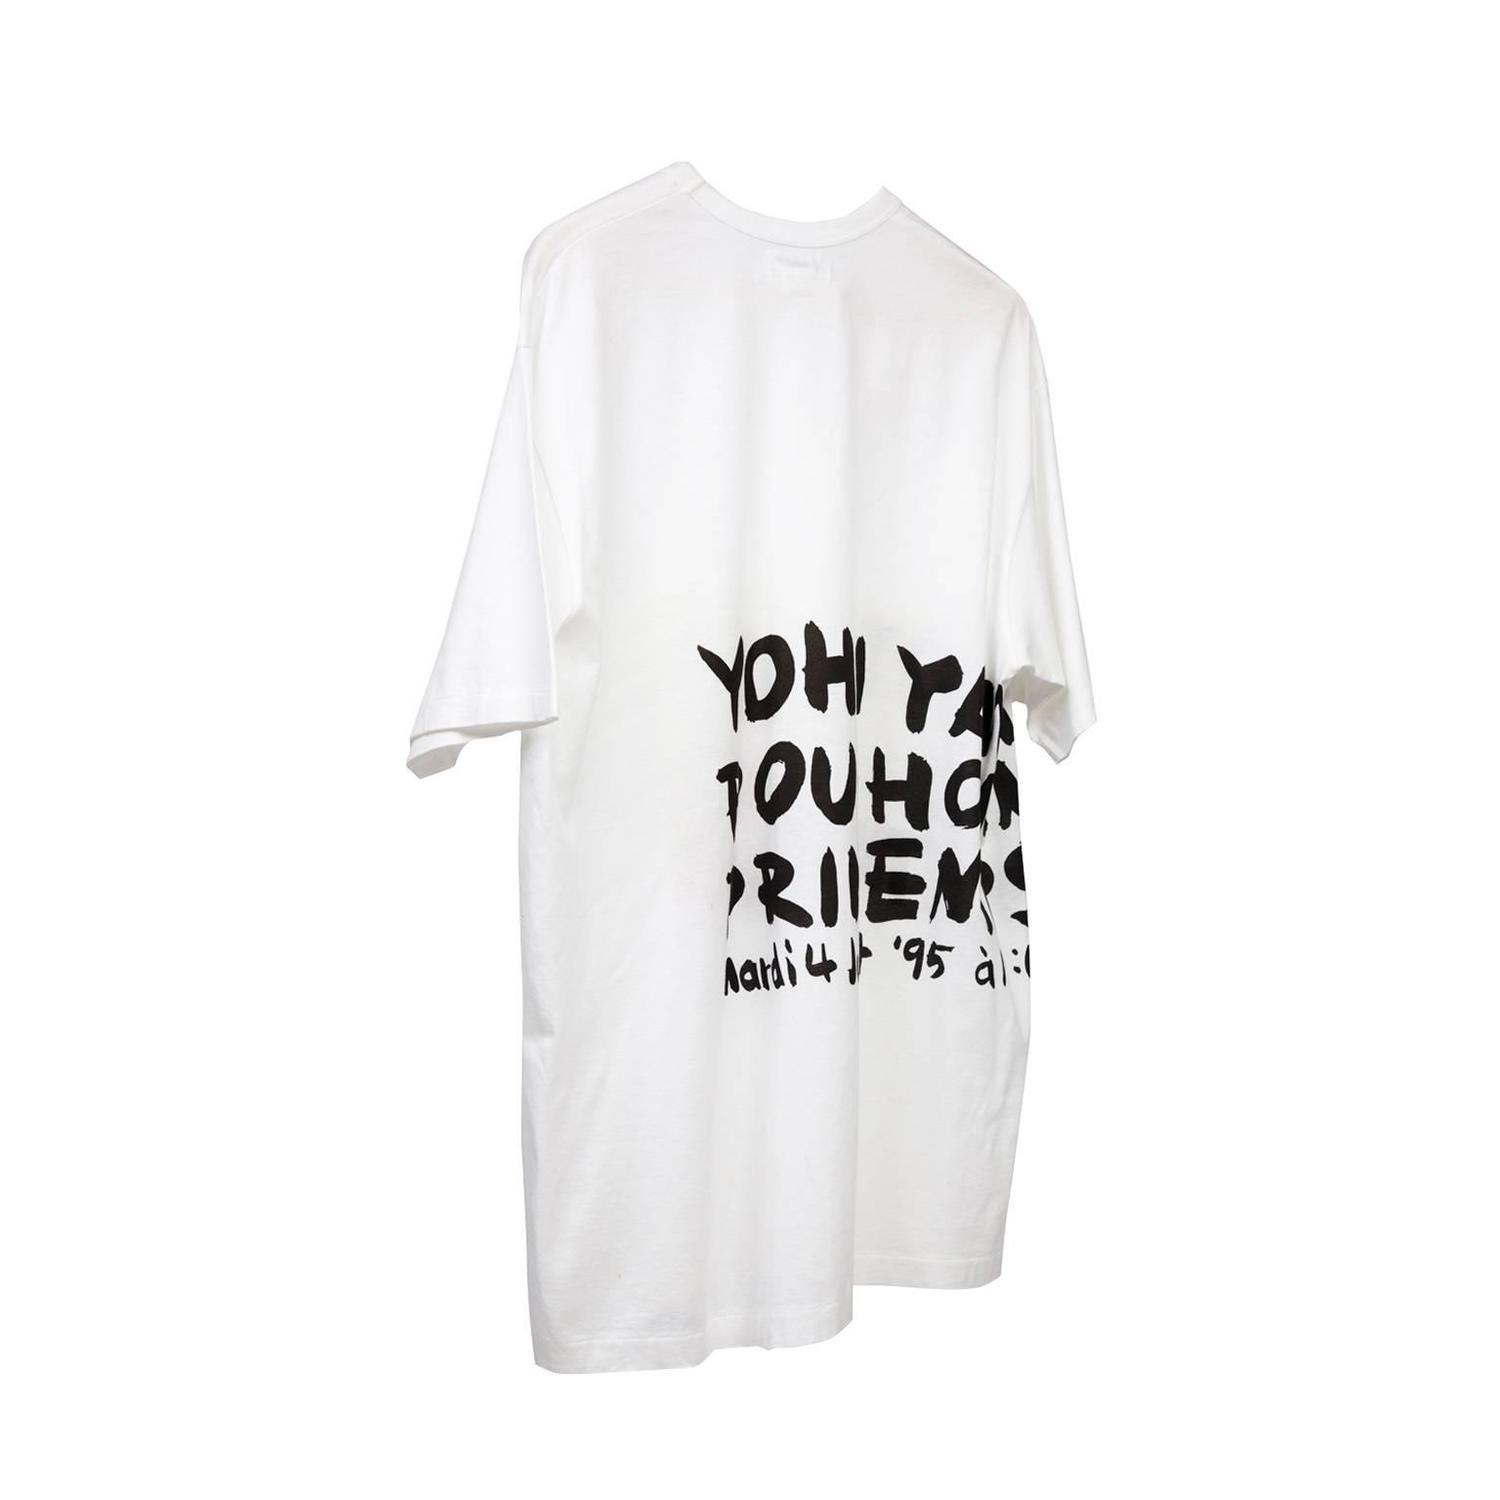 Yohji Yamamoto PRINTEMPS/ETE 1995 Show T Shirt at 1stdibs